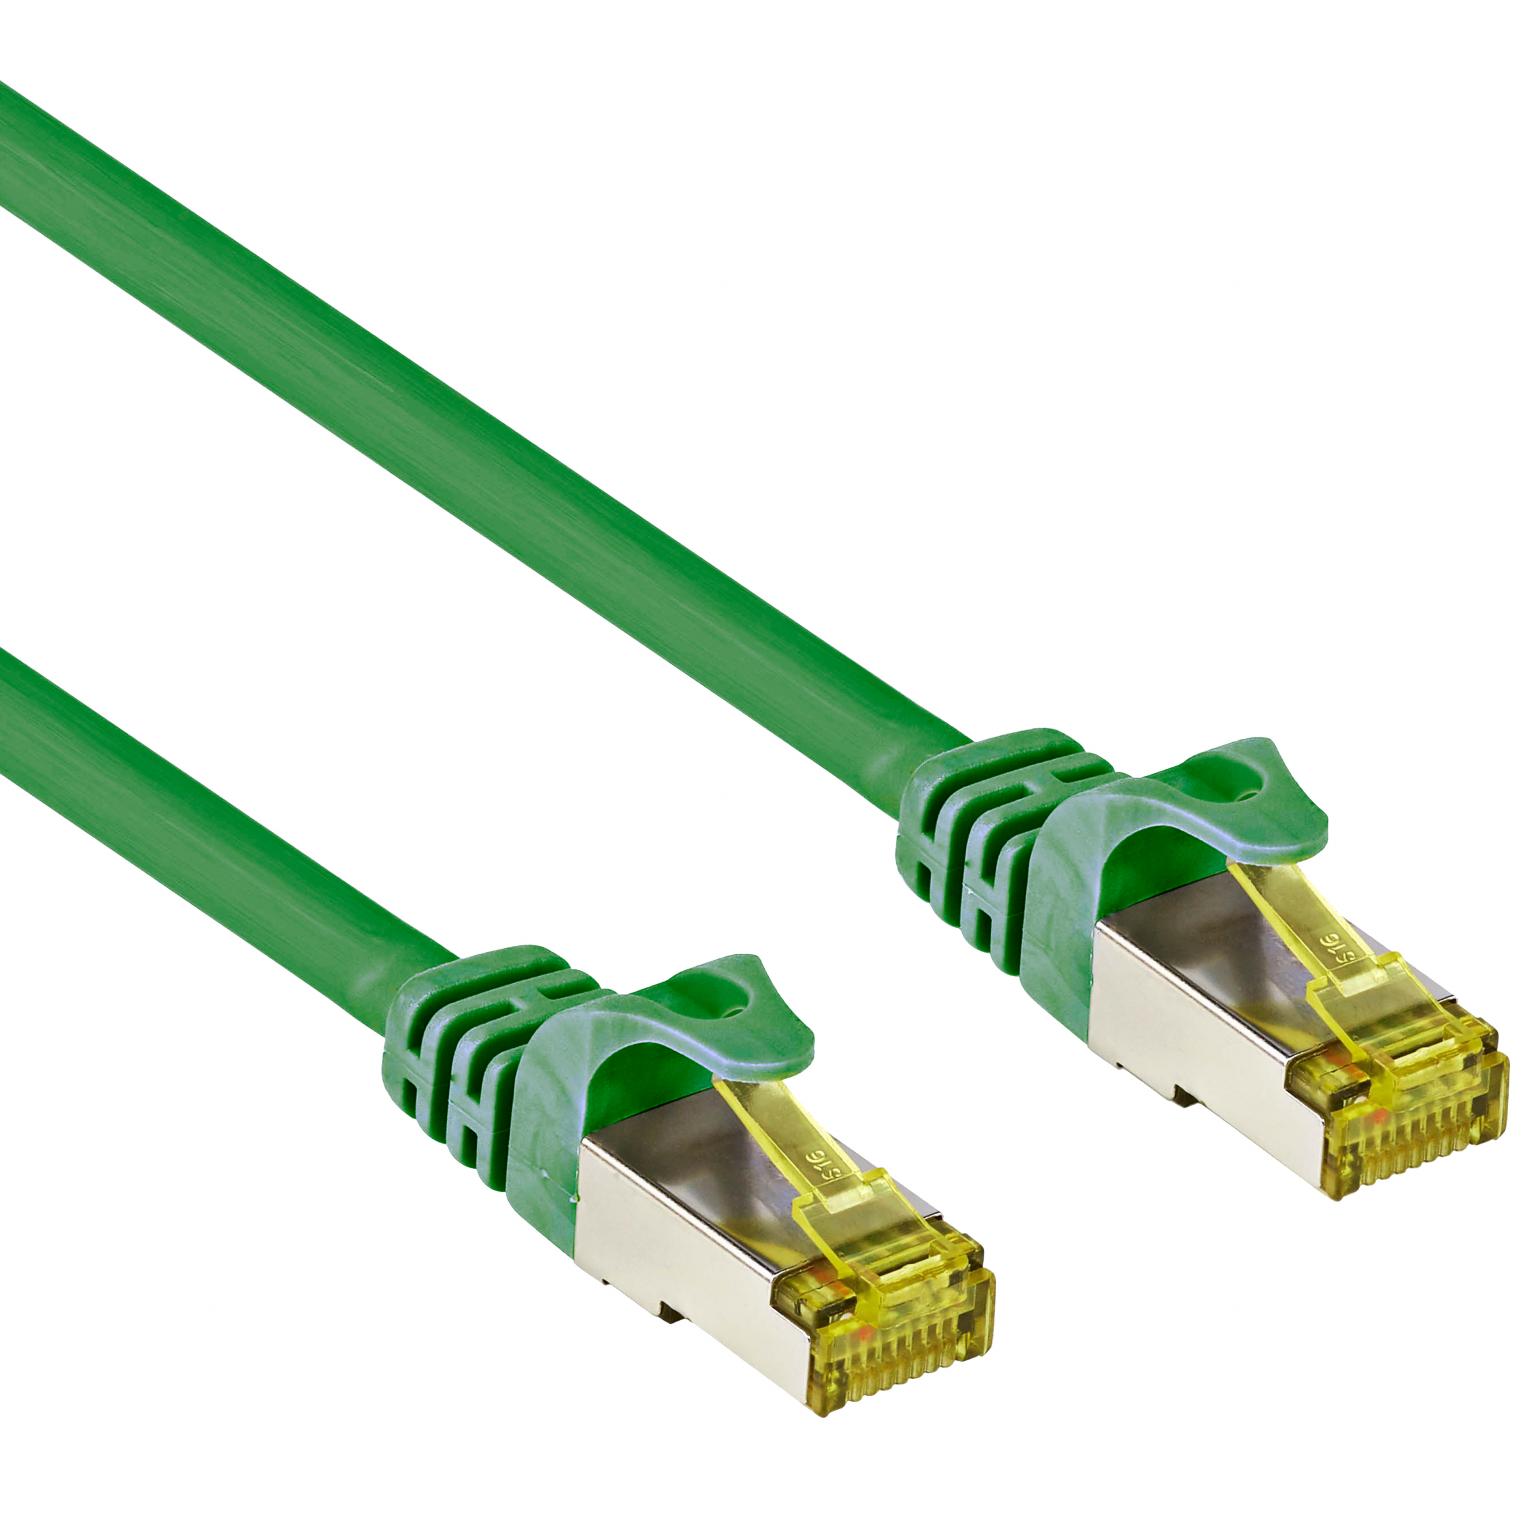 Lot Compatibel met straf Netwerkkabel Cat 7 S/FTP - Netwerkkabel - groen, Type: Cat 7 S/FTP (PiMF) -  LSZH, Aansluiting 1: RJ45 male, Aansluiting 2: RJ45 male, Aders: Cu - AWG  26/7, Lengte: 5 meter.